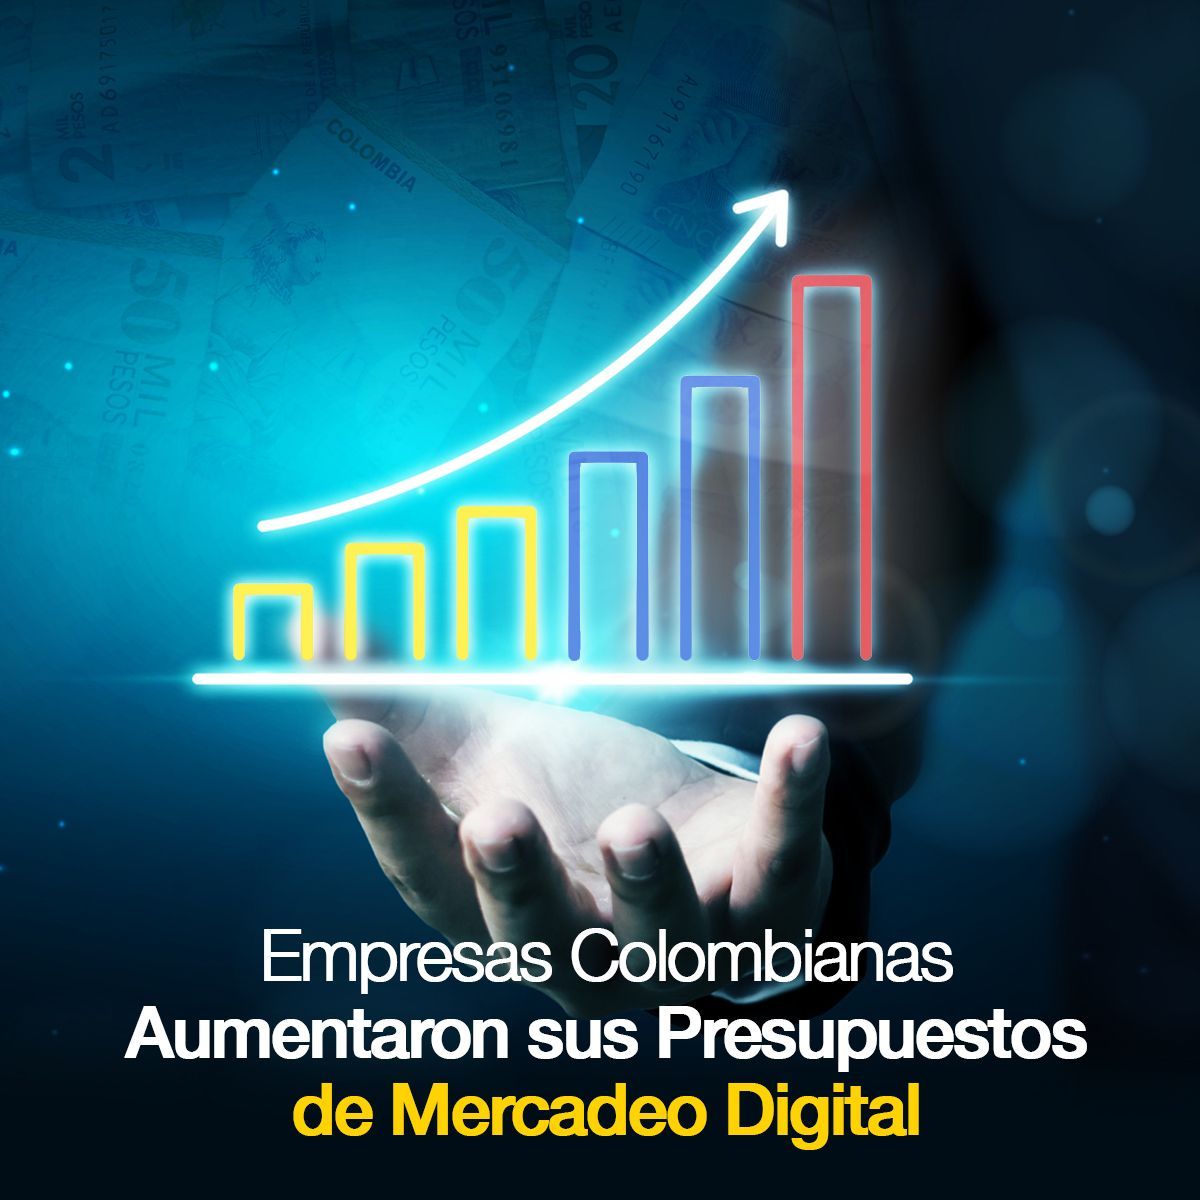 Empresas Colombianas Aumentaron sus Presupuestos de Mercadeo Digital